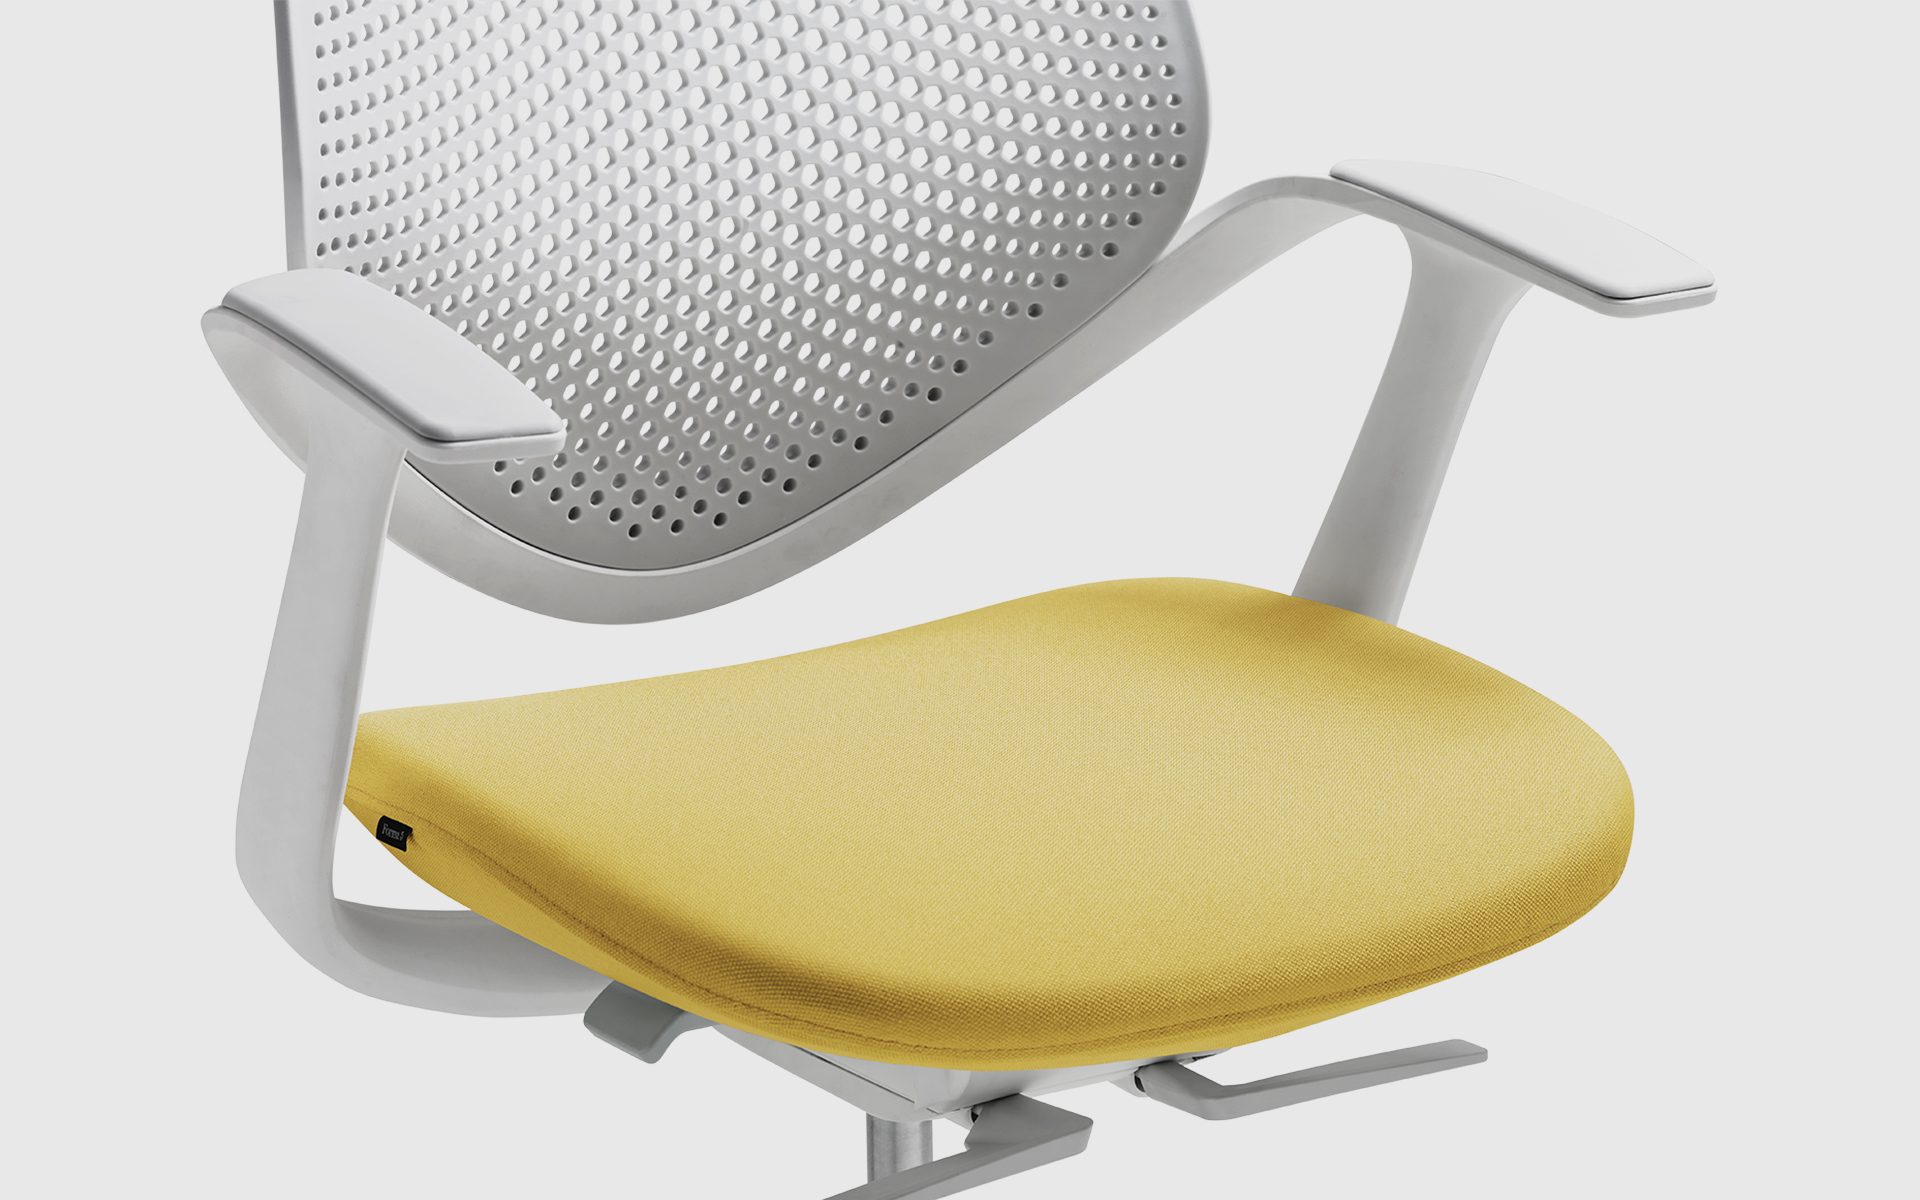 Vergrößerte Teilansicht von vorne eines Forma 5 Flow Bürostuhls von ITO Design mit gepolsterter Sitzfläche in Gelb, Rücken- und Armlehnen in Weiß.